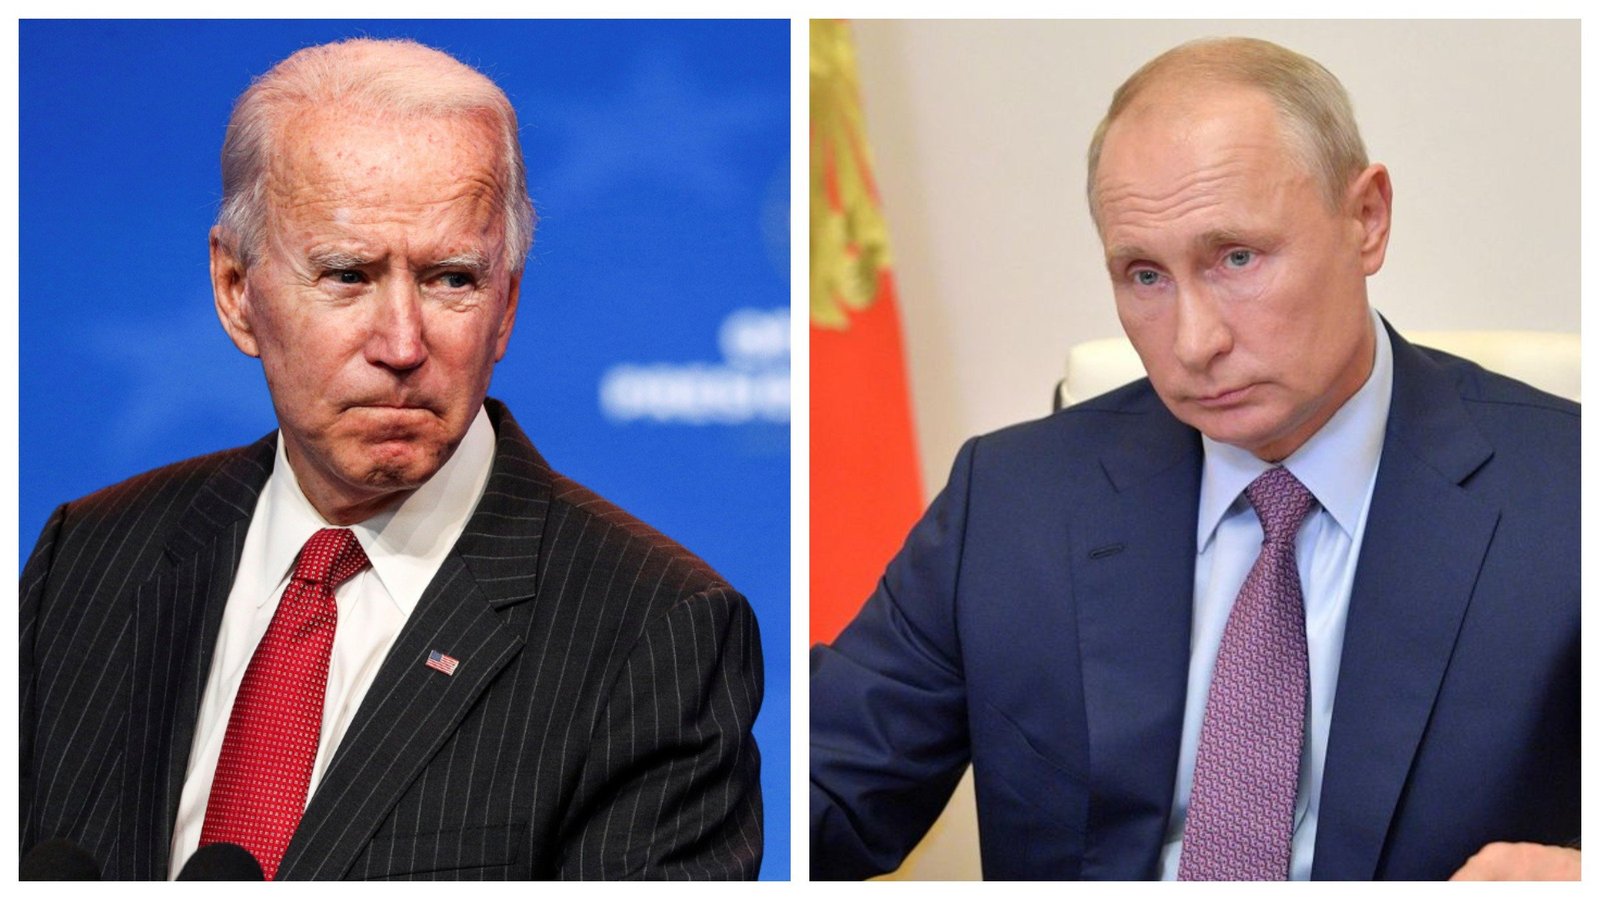 ЗМІ дізналися, де може відбутися зустріч Байдена і Путіна